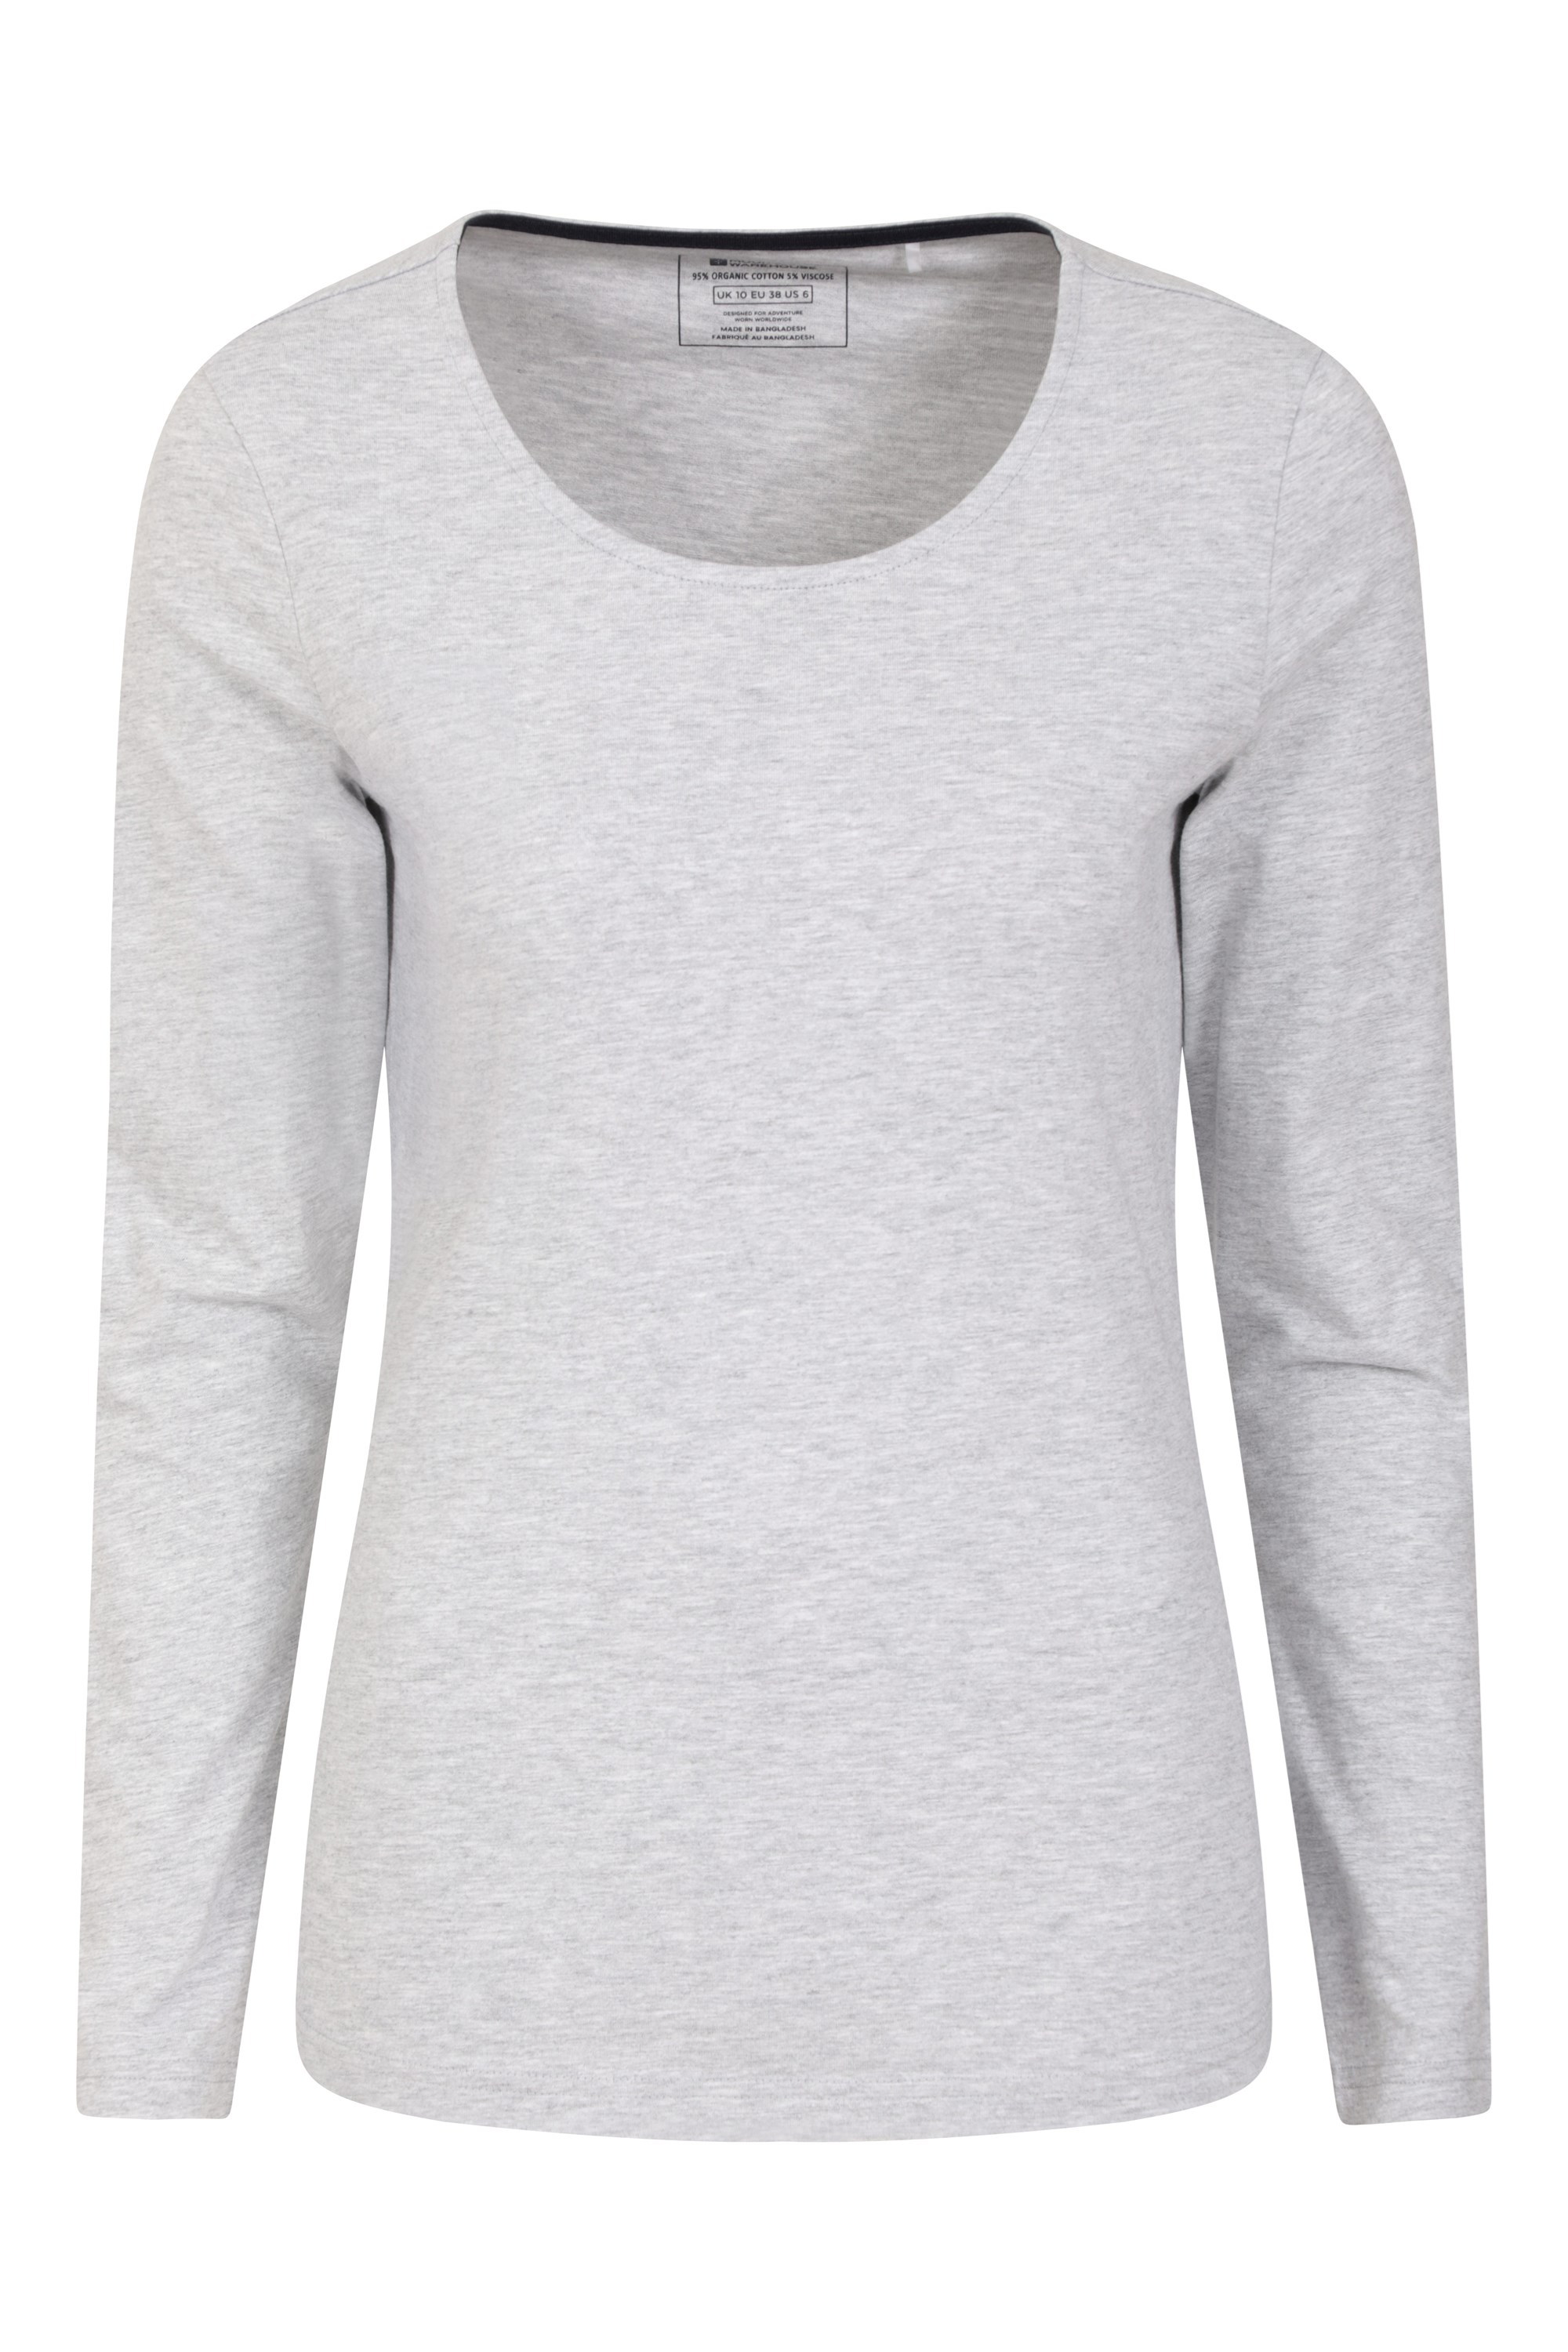 Eden Womens Organic Round Neck T-Shirt - Grey